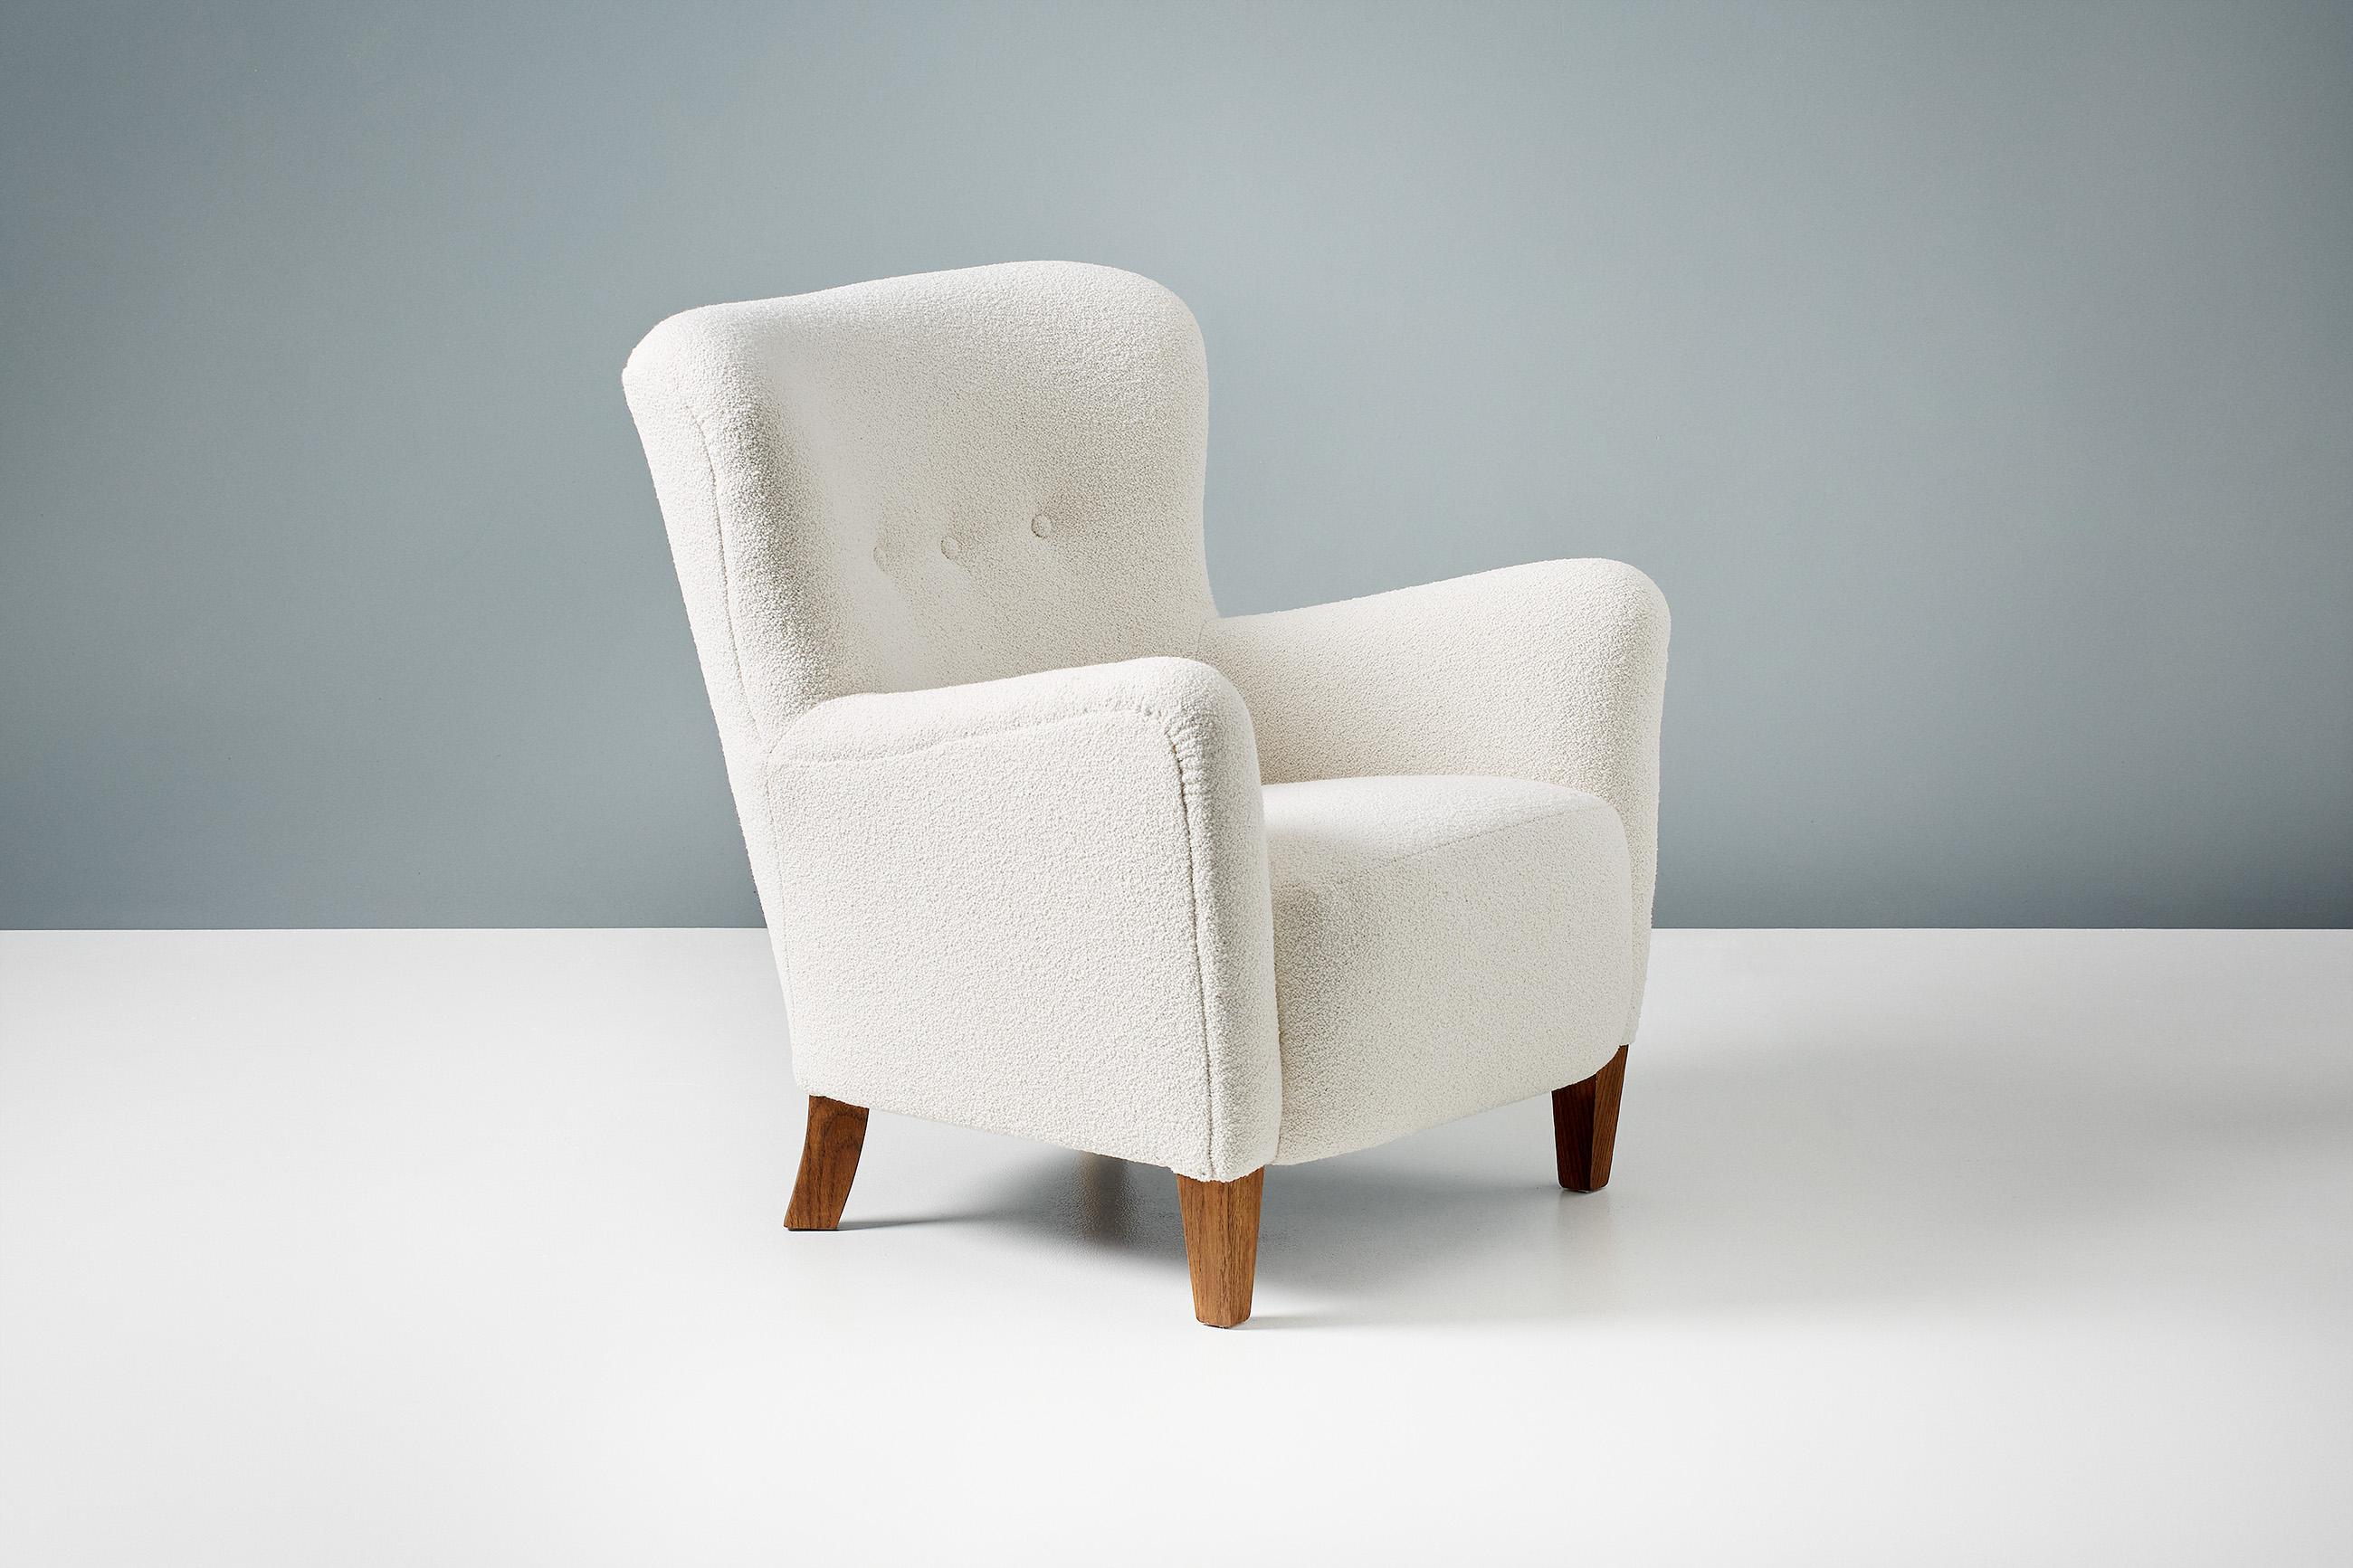 Dagmar Design - chaise longue ryo

La chaise longue Ryo fait partie de notre gamme de meubles rembourrés sur mesure. Cette pièce a été conçue et fabriquée à la main dans nos ateliers de Londres en utilisant des matériaux de la plus haute qualité.